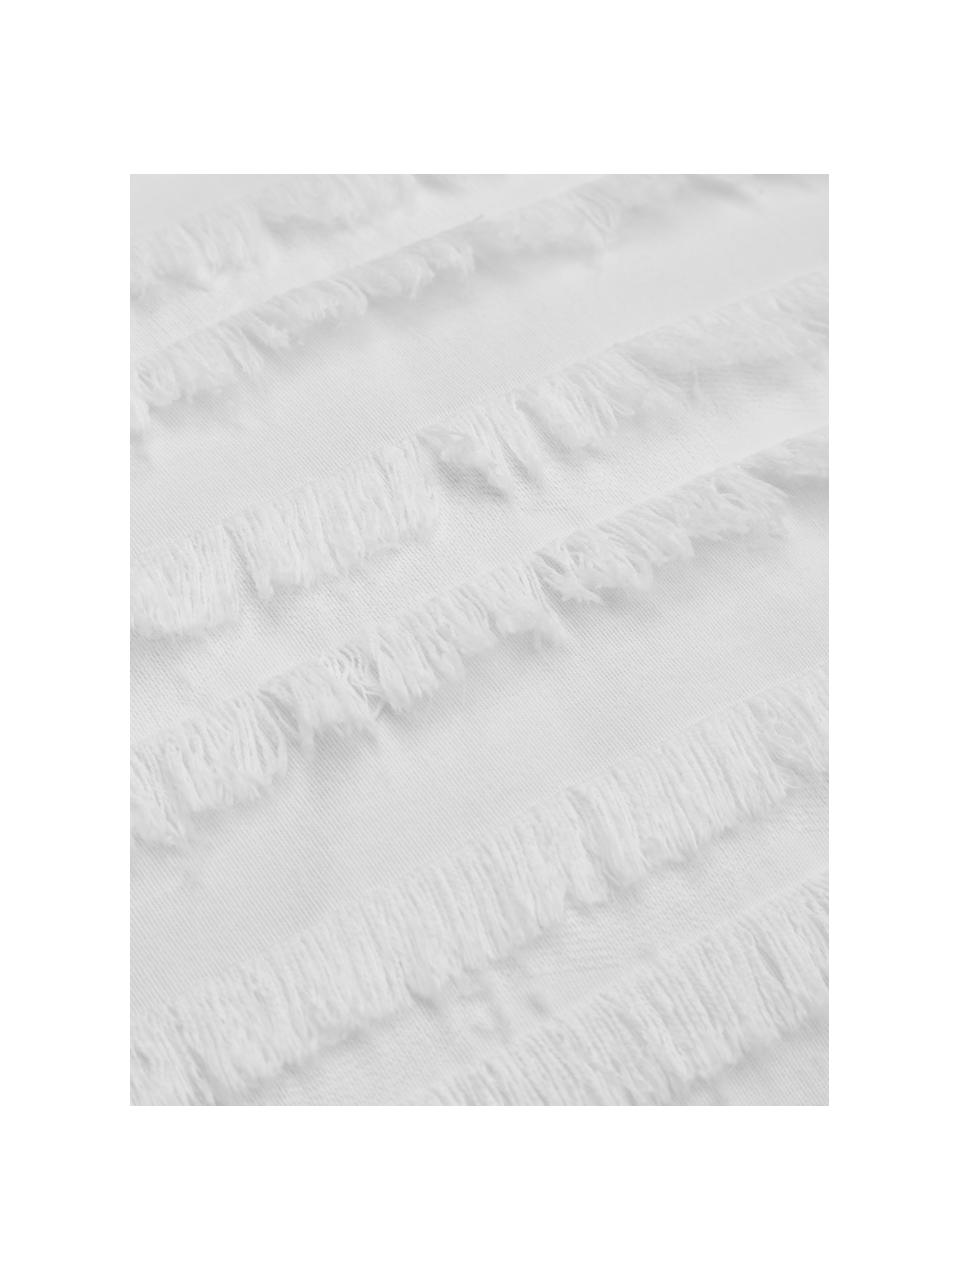 Housse de coussin rectangulaire blanche Jessie, 88 % coton, 7 % viscose, 5 % lin, Blanc, larg. 30 x long. 50 cm